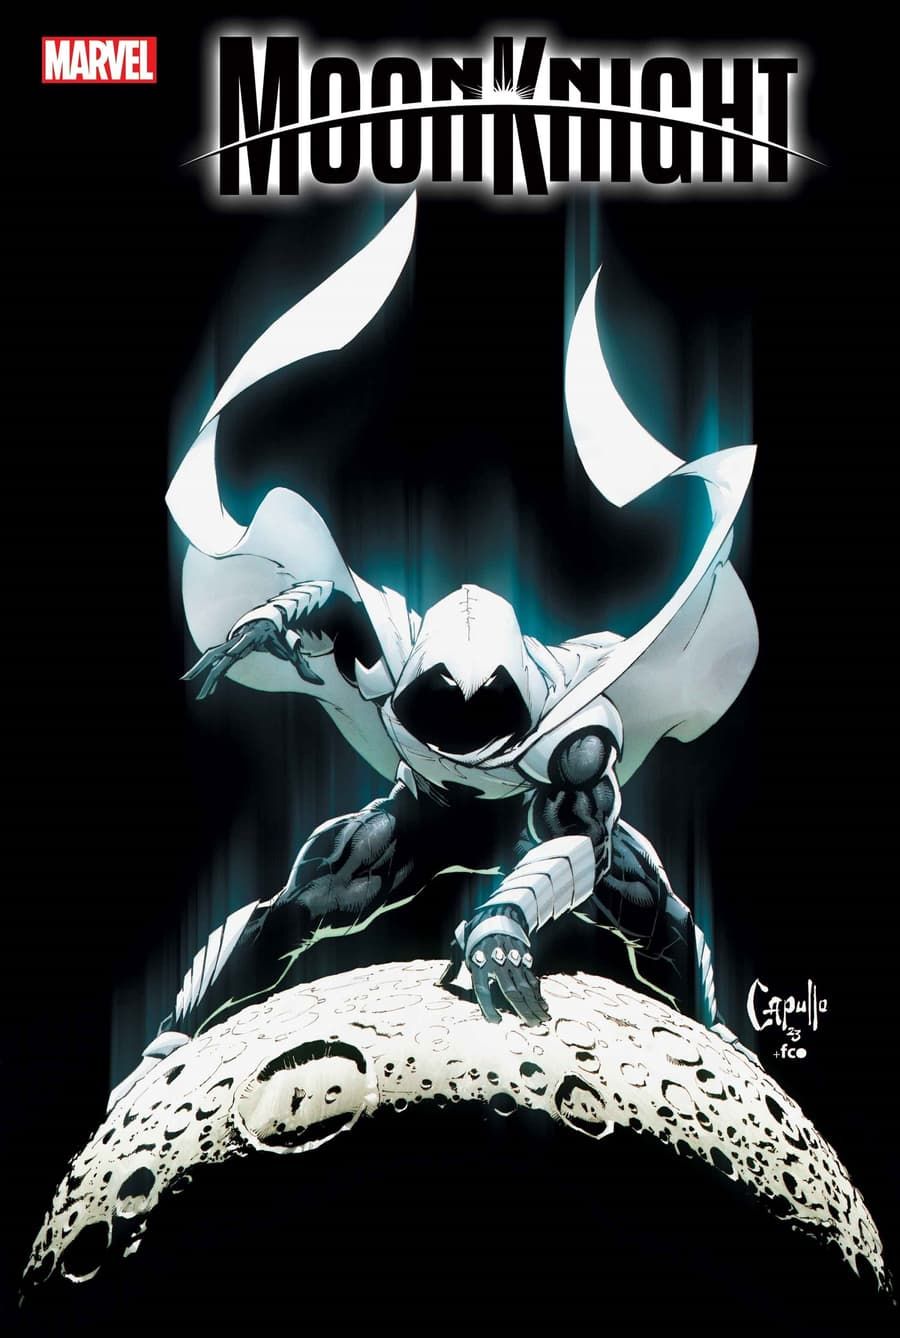 Capa variante do Cavaleiro da Lua #30 por Greg Capullo